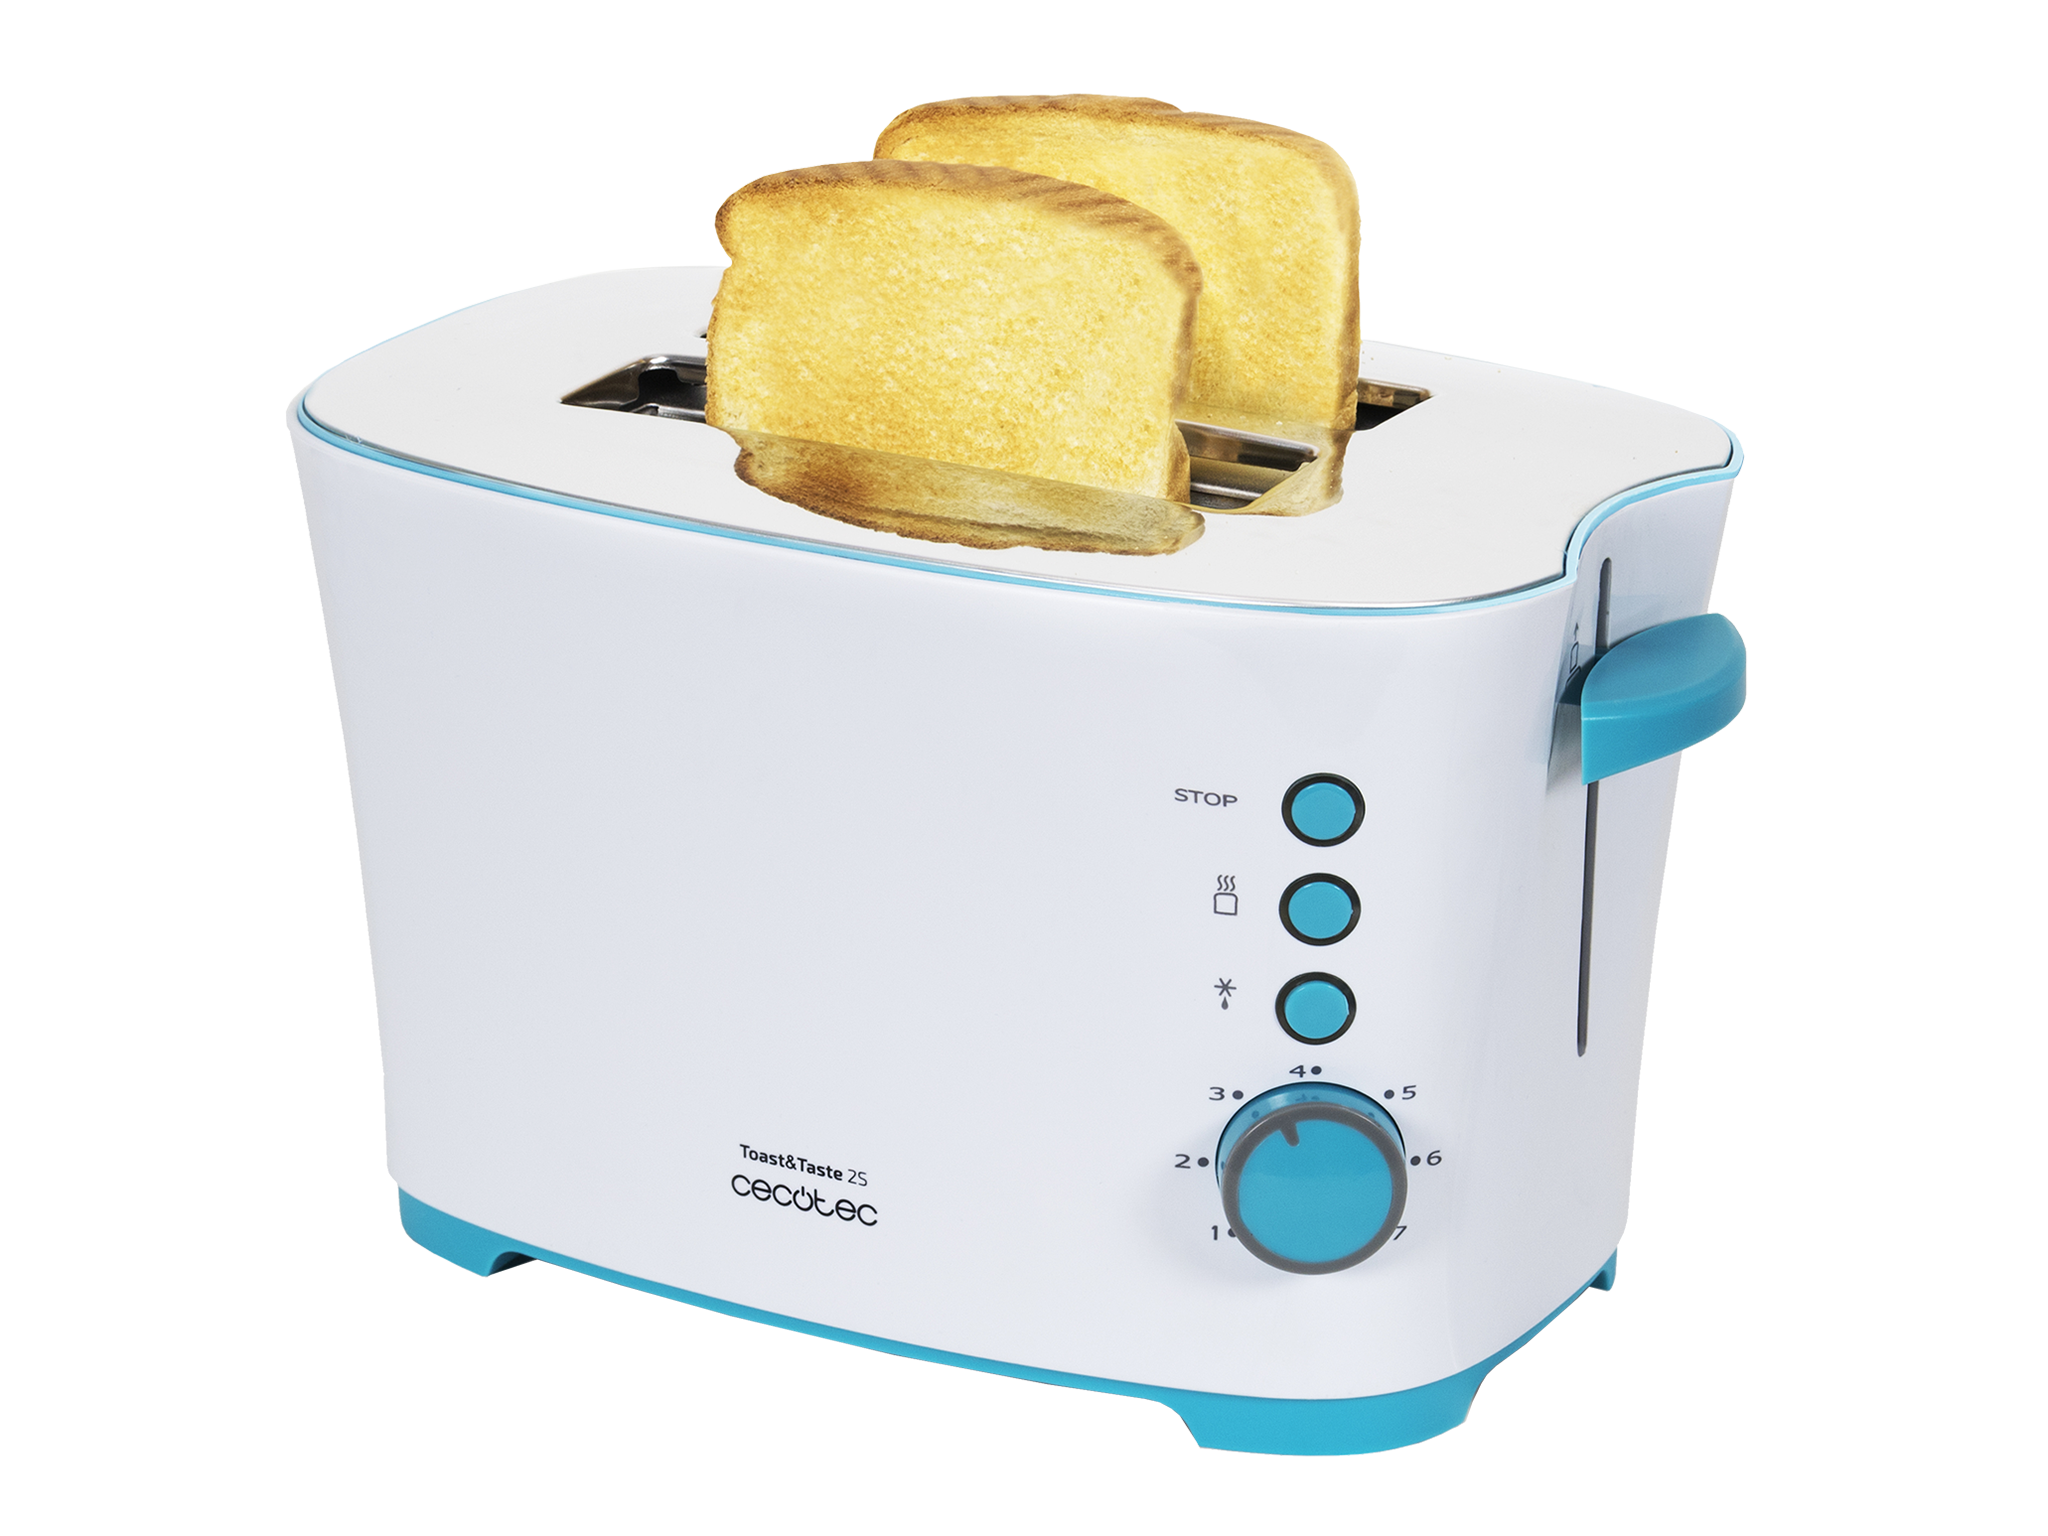 Tostadora Vertical Toast&Taste 2S. 650 W, 7 Niveles de Potencia, Capacidad para 2 Tostadas, 3 Funciones (Tostar, Recalentar, Descongelar), Incluye Pinzas, Bandeja Recogemigas